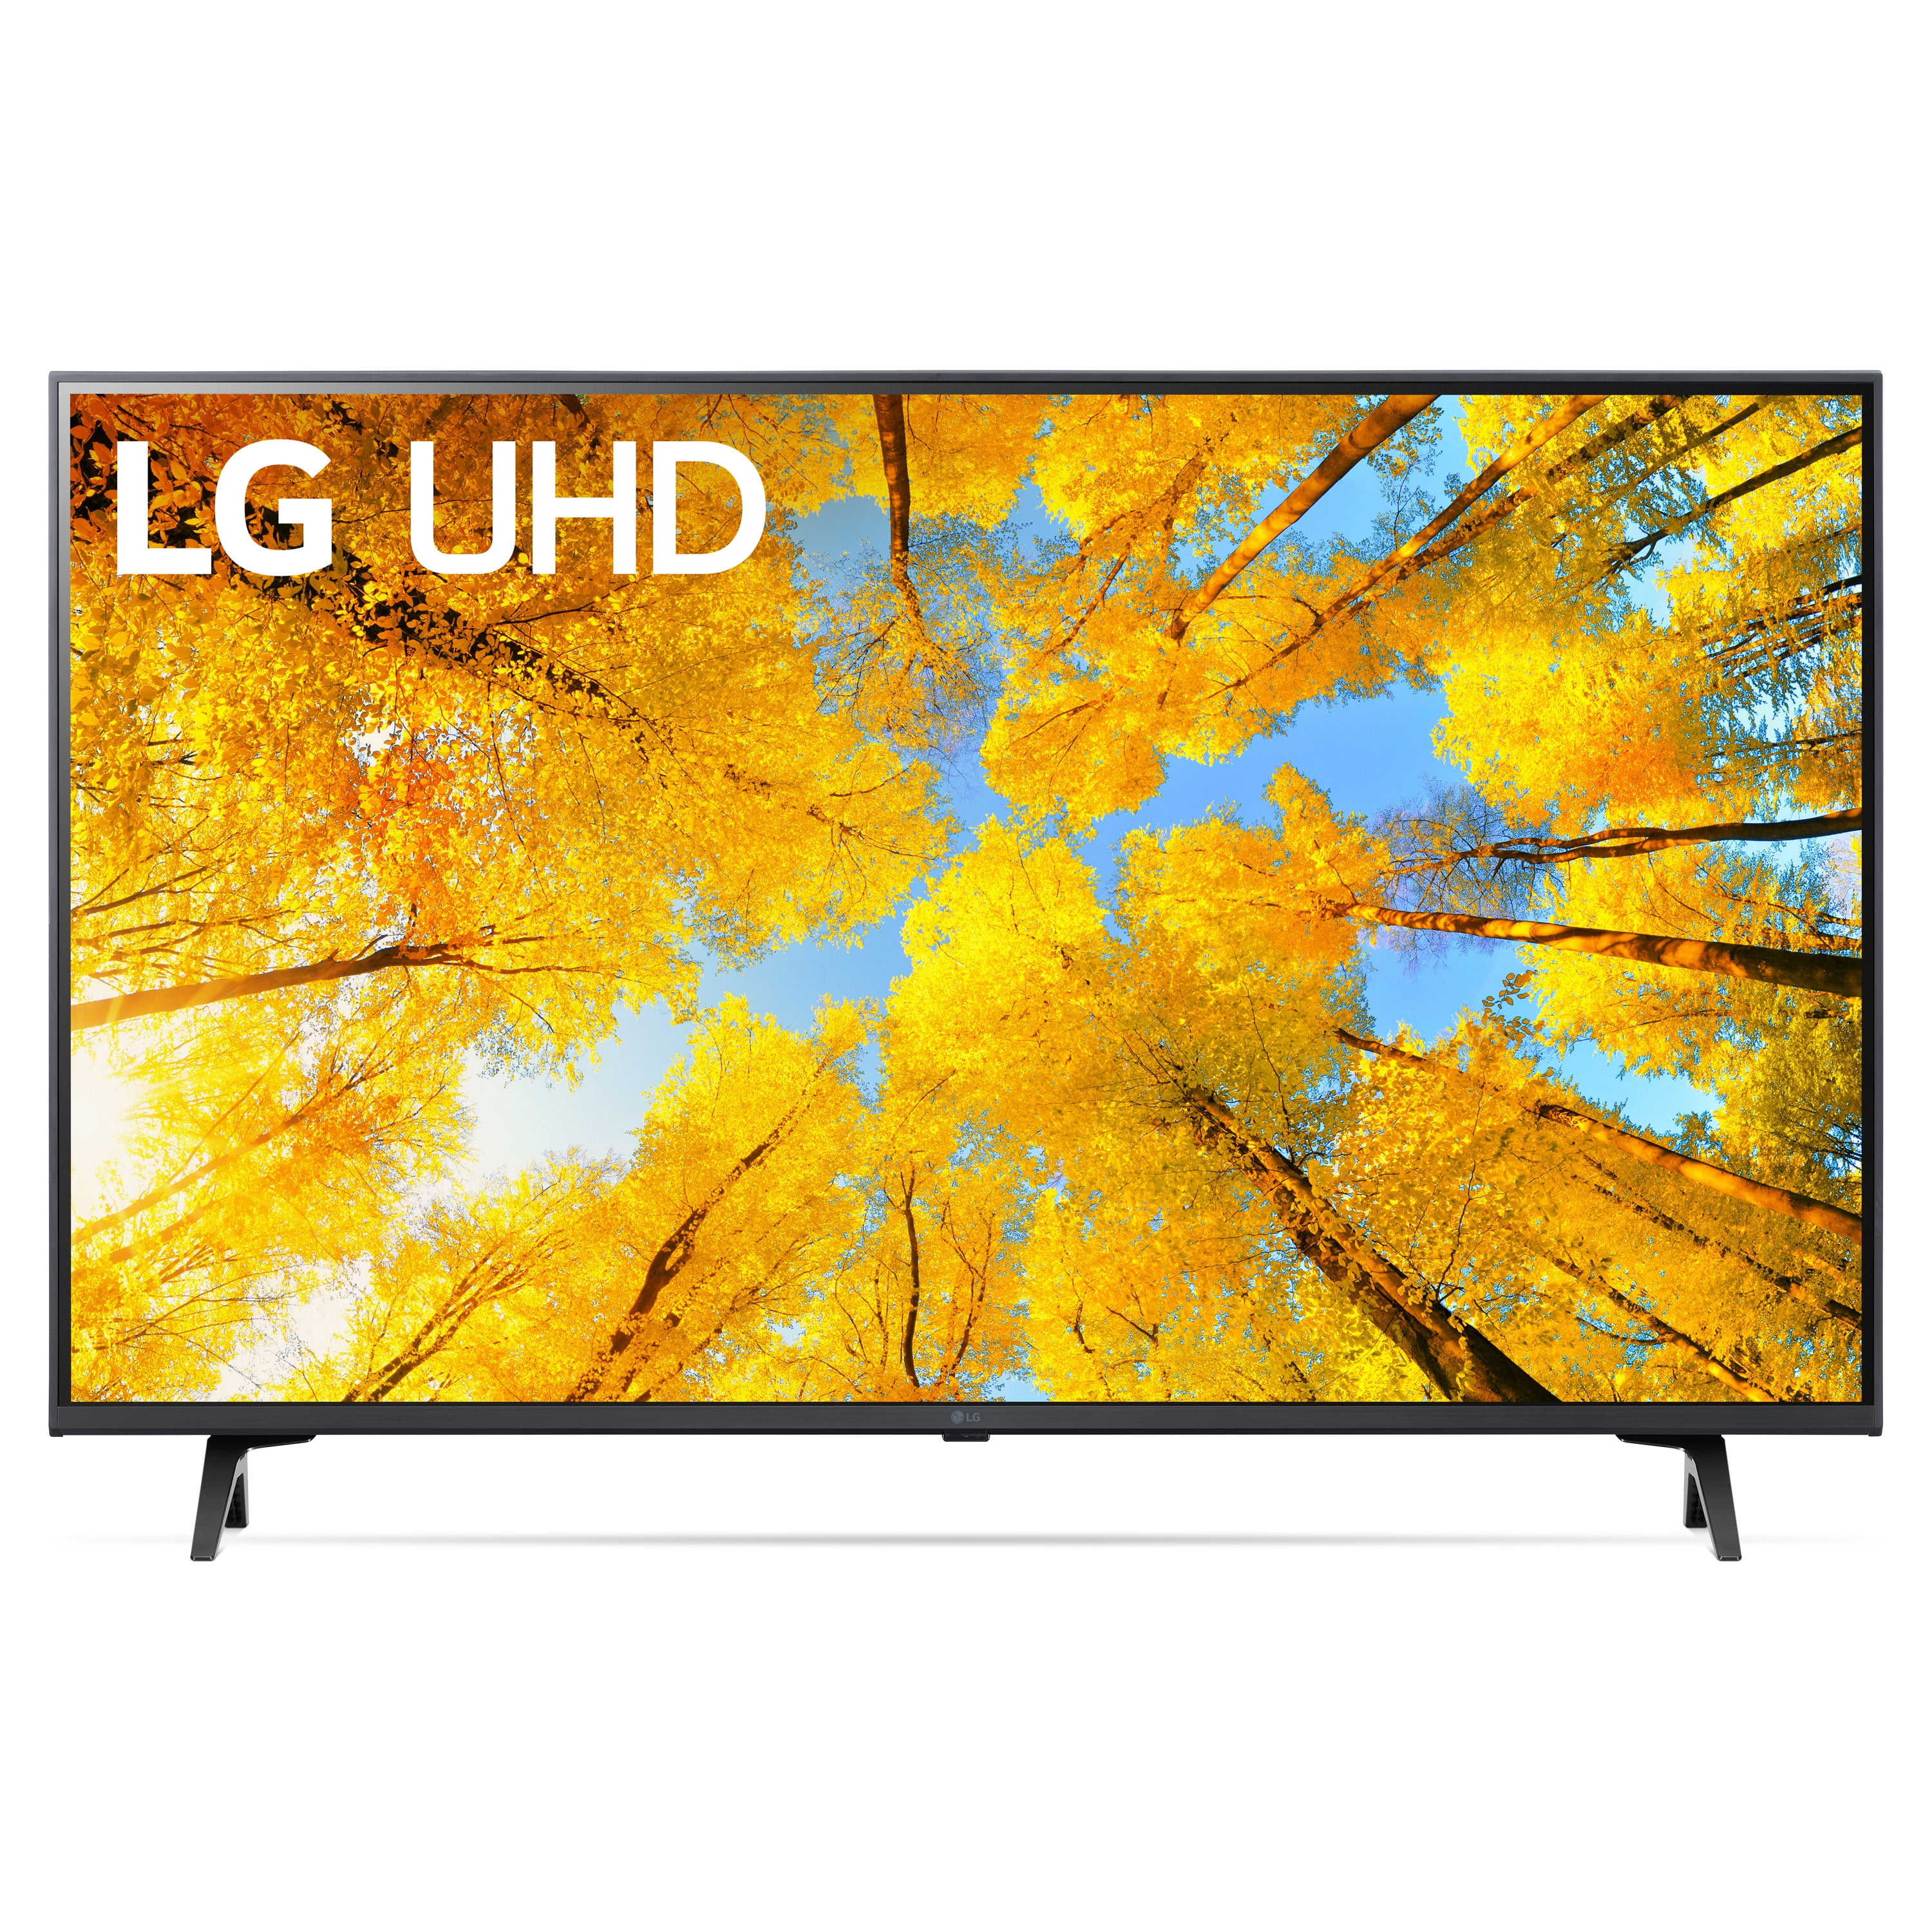 Télévision LG 60 pouces pas cher - LED 4K UHD - Babi Shop